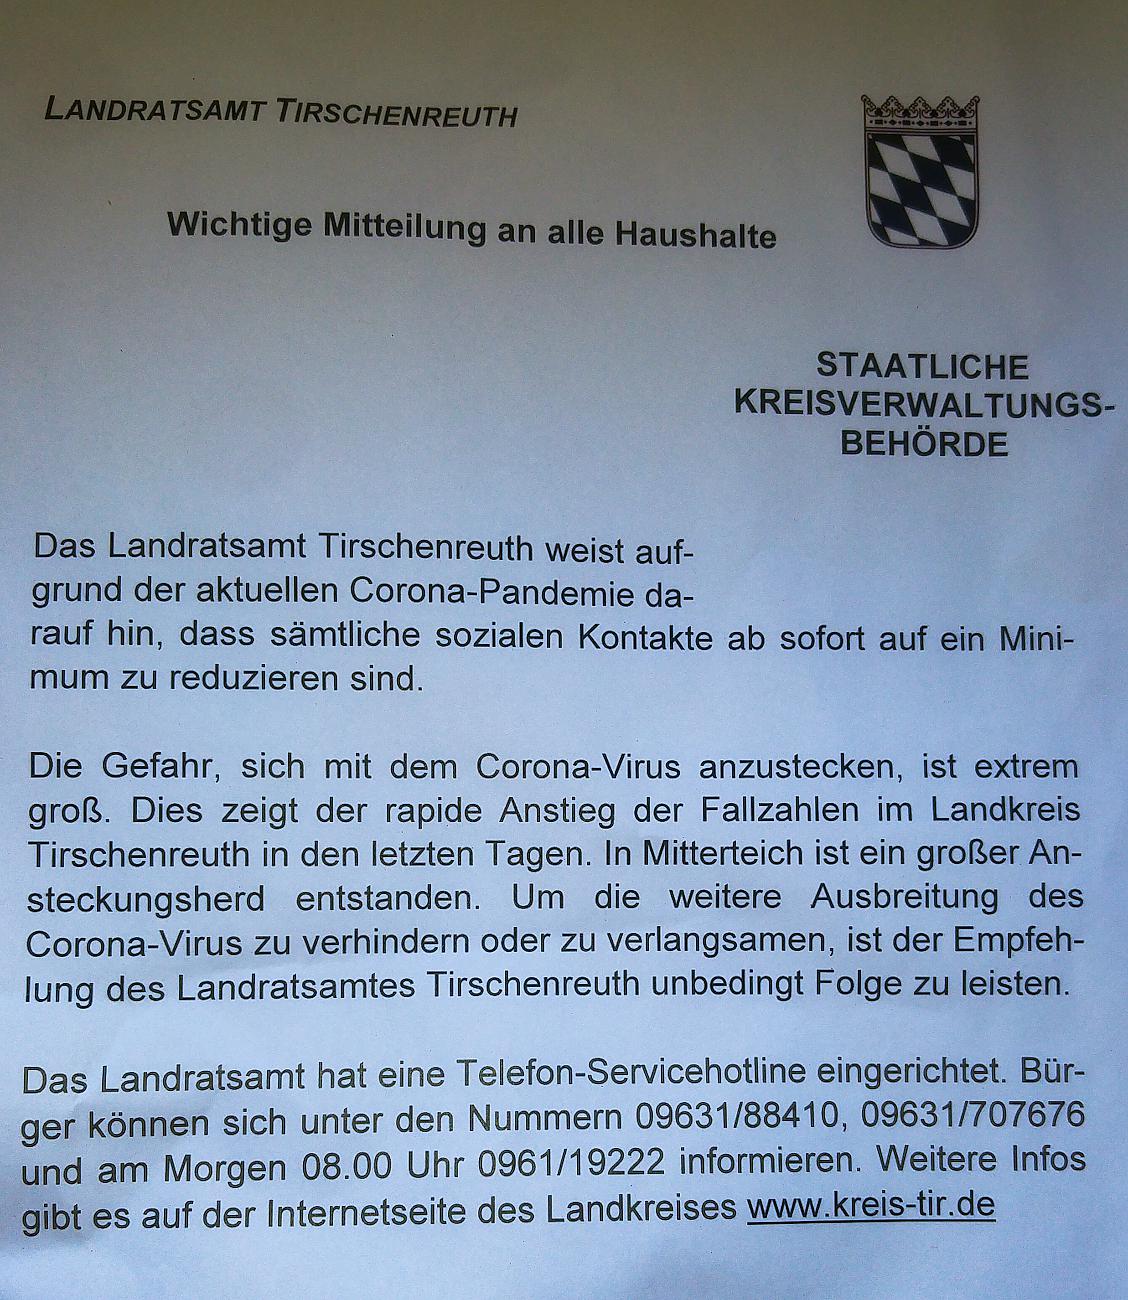 Foto: Martin Zehrer - Wichtiger Hinweis vom Landratsamt Tirschenreuth bezüglich Corona Pandemie vom April 2020 